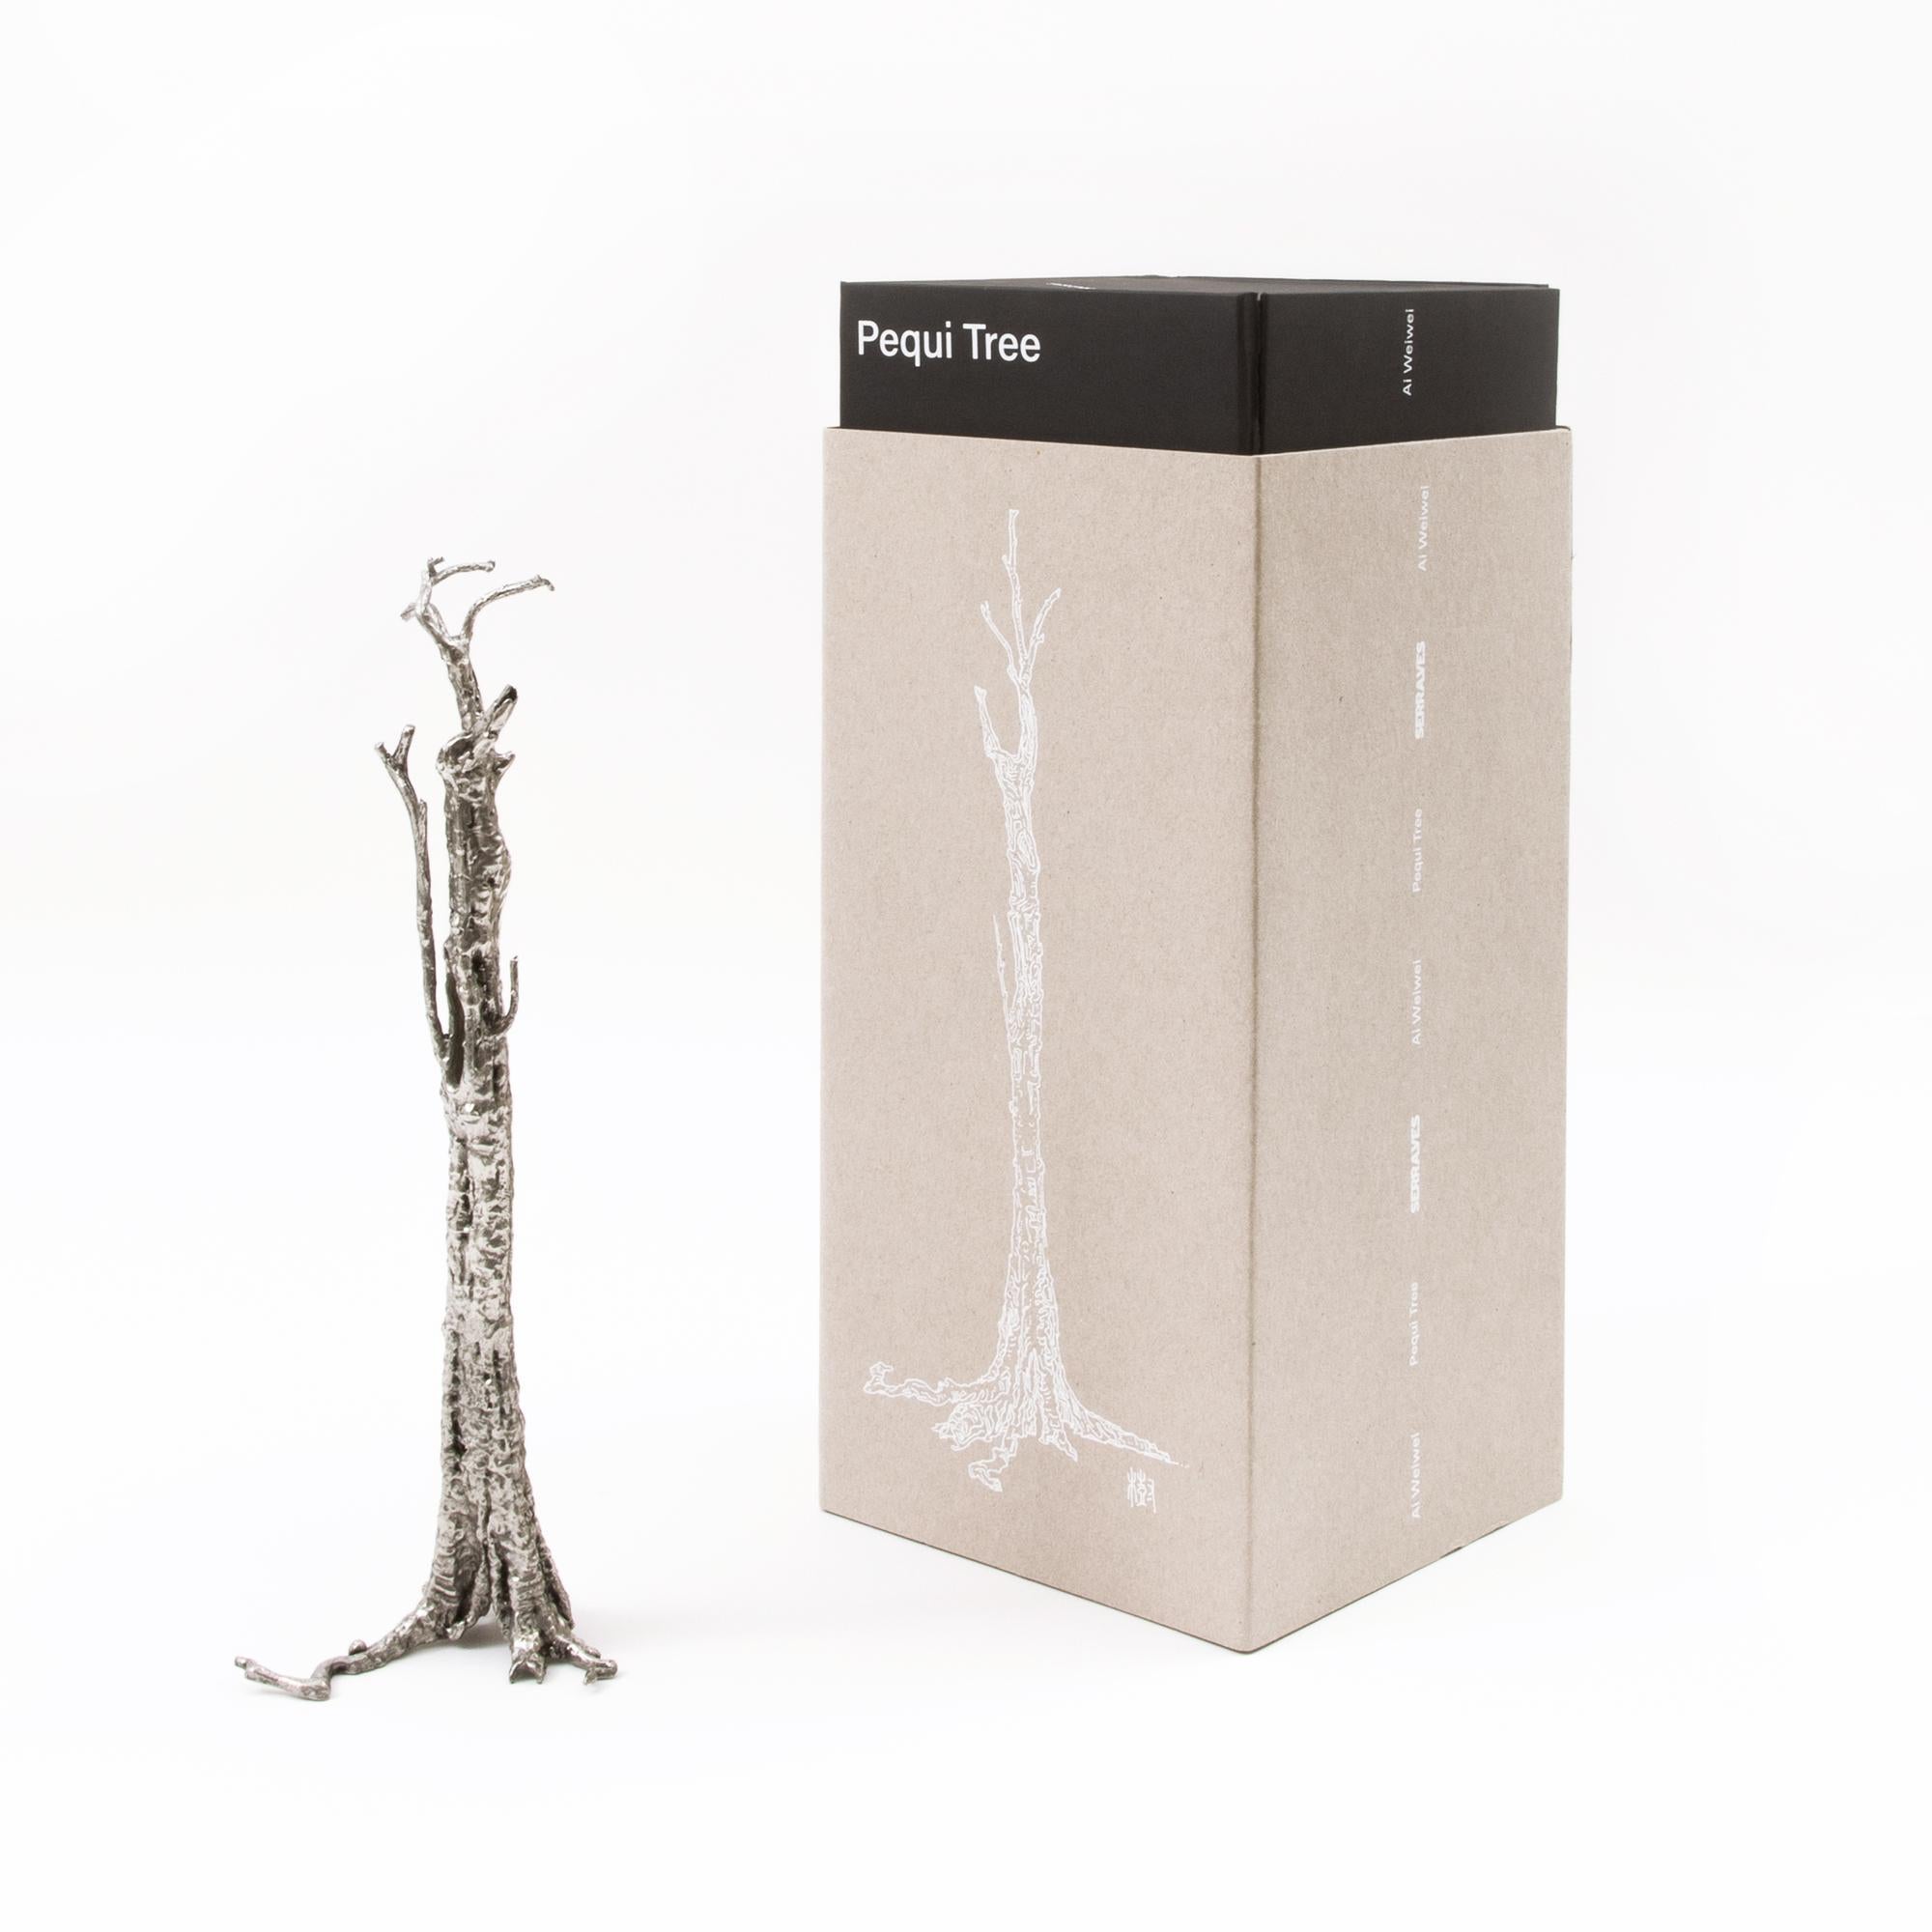 La miniature Pequi Tree est basée sur la sculpture de 32 mètres d'Ai Weiwei, Pequi Tree de 2018-2020, et a été produite à l'échelle 1/100. Comme la grande sculpture en fonte, la miniature témoigne de la disparition de la coexistence harmonieuse